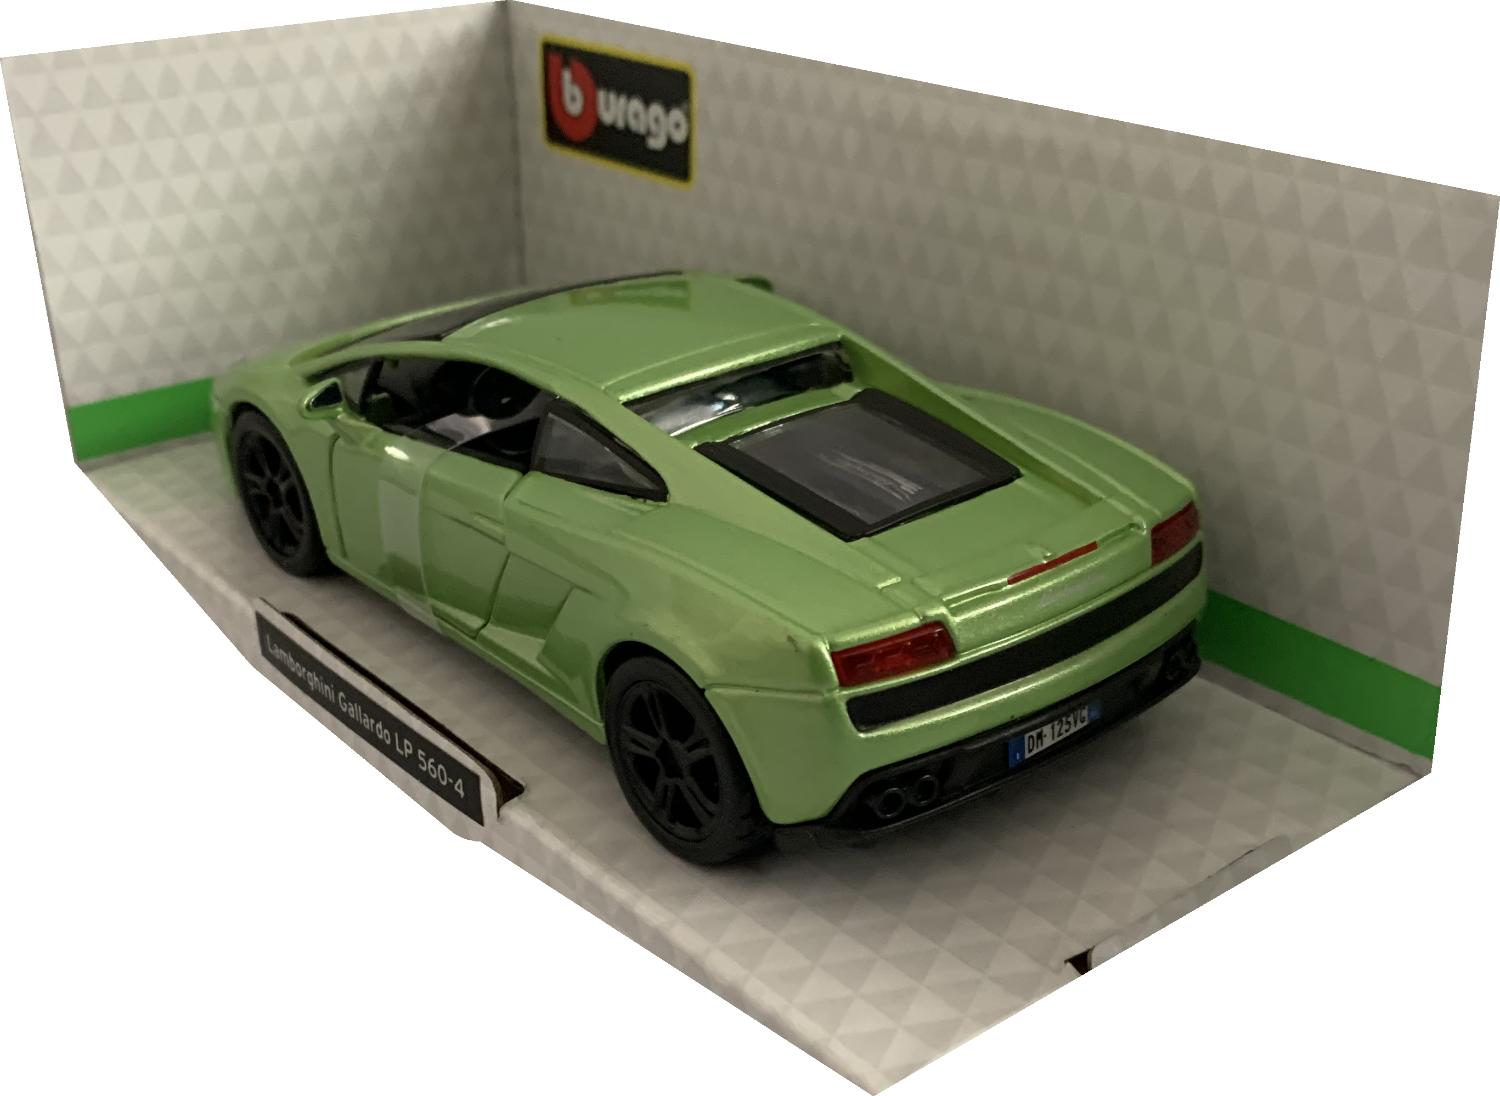 Lamborghini Gallardo LP 560-4 in metallic green 1:32 scale model from Bburago